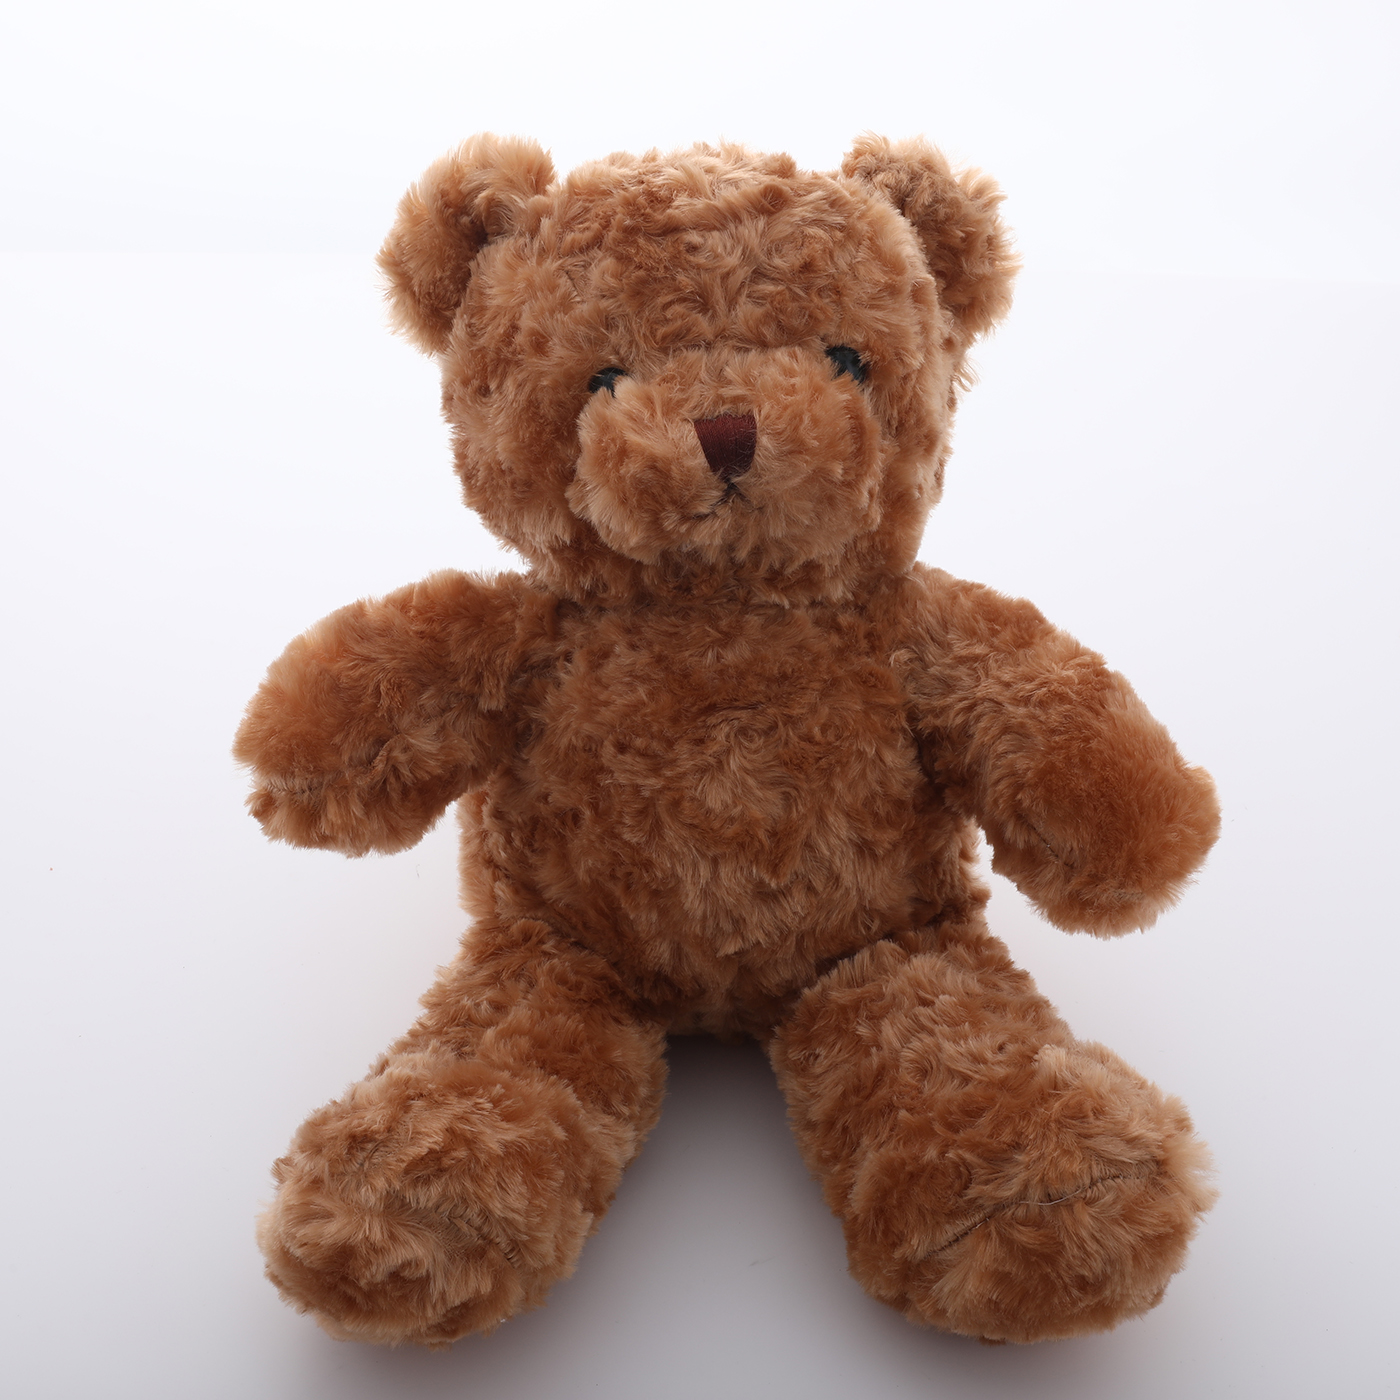 Small Teddy Bear Plush Toy3